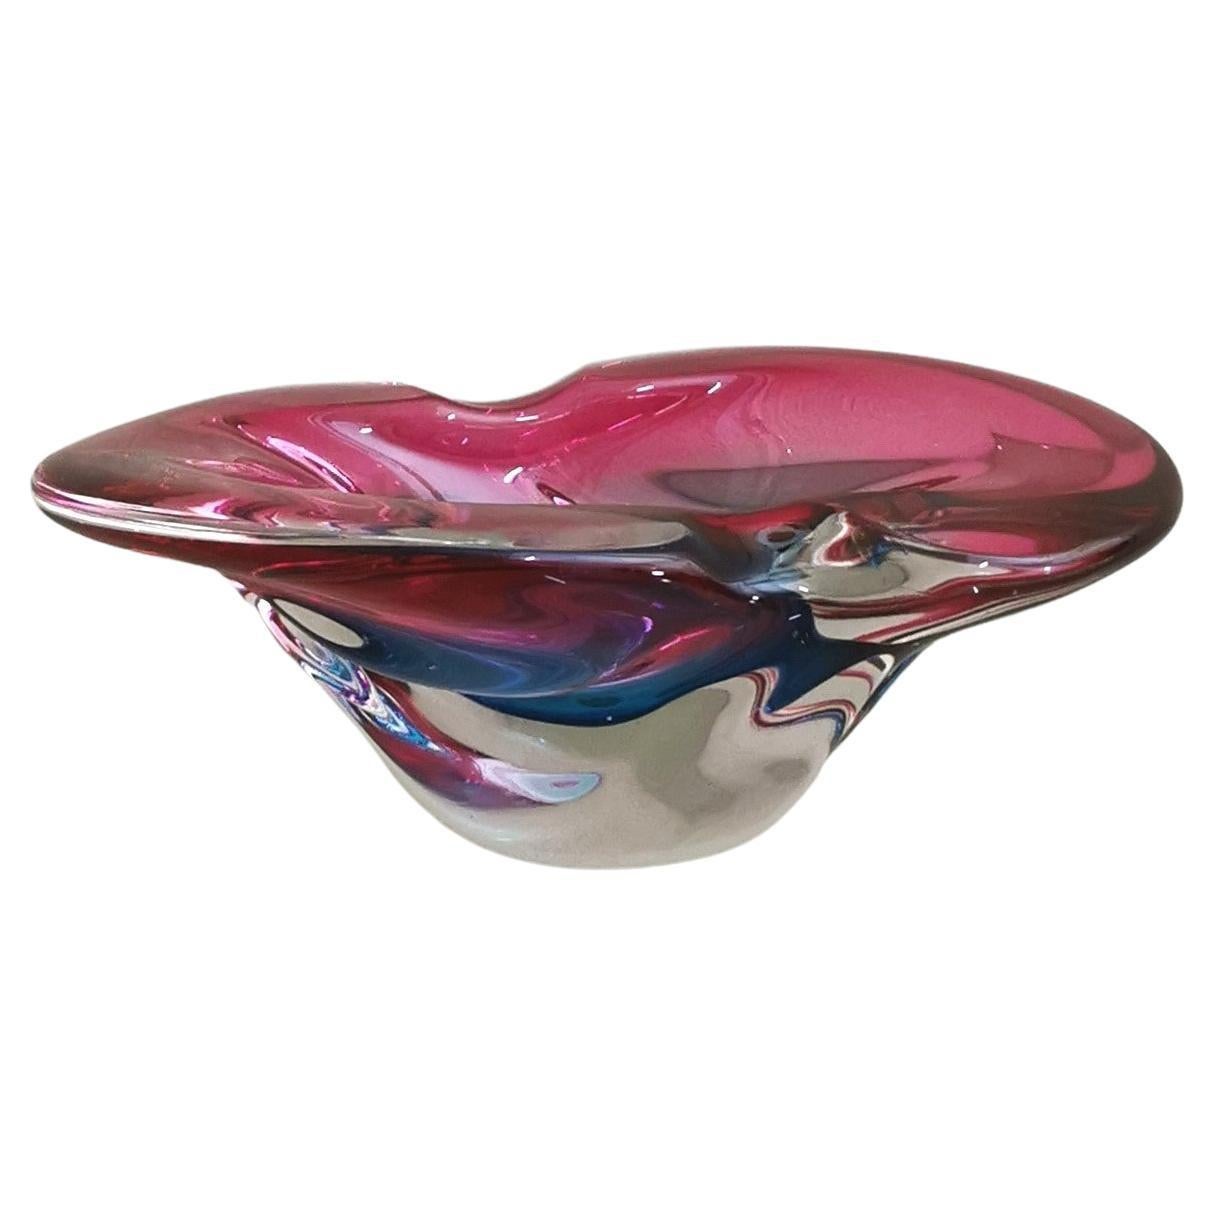 Murano Glass Vide-Poche Decorative Object Attributed to Flavio Poli Midcentury For Sale